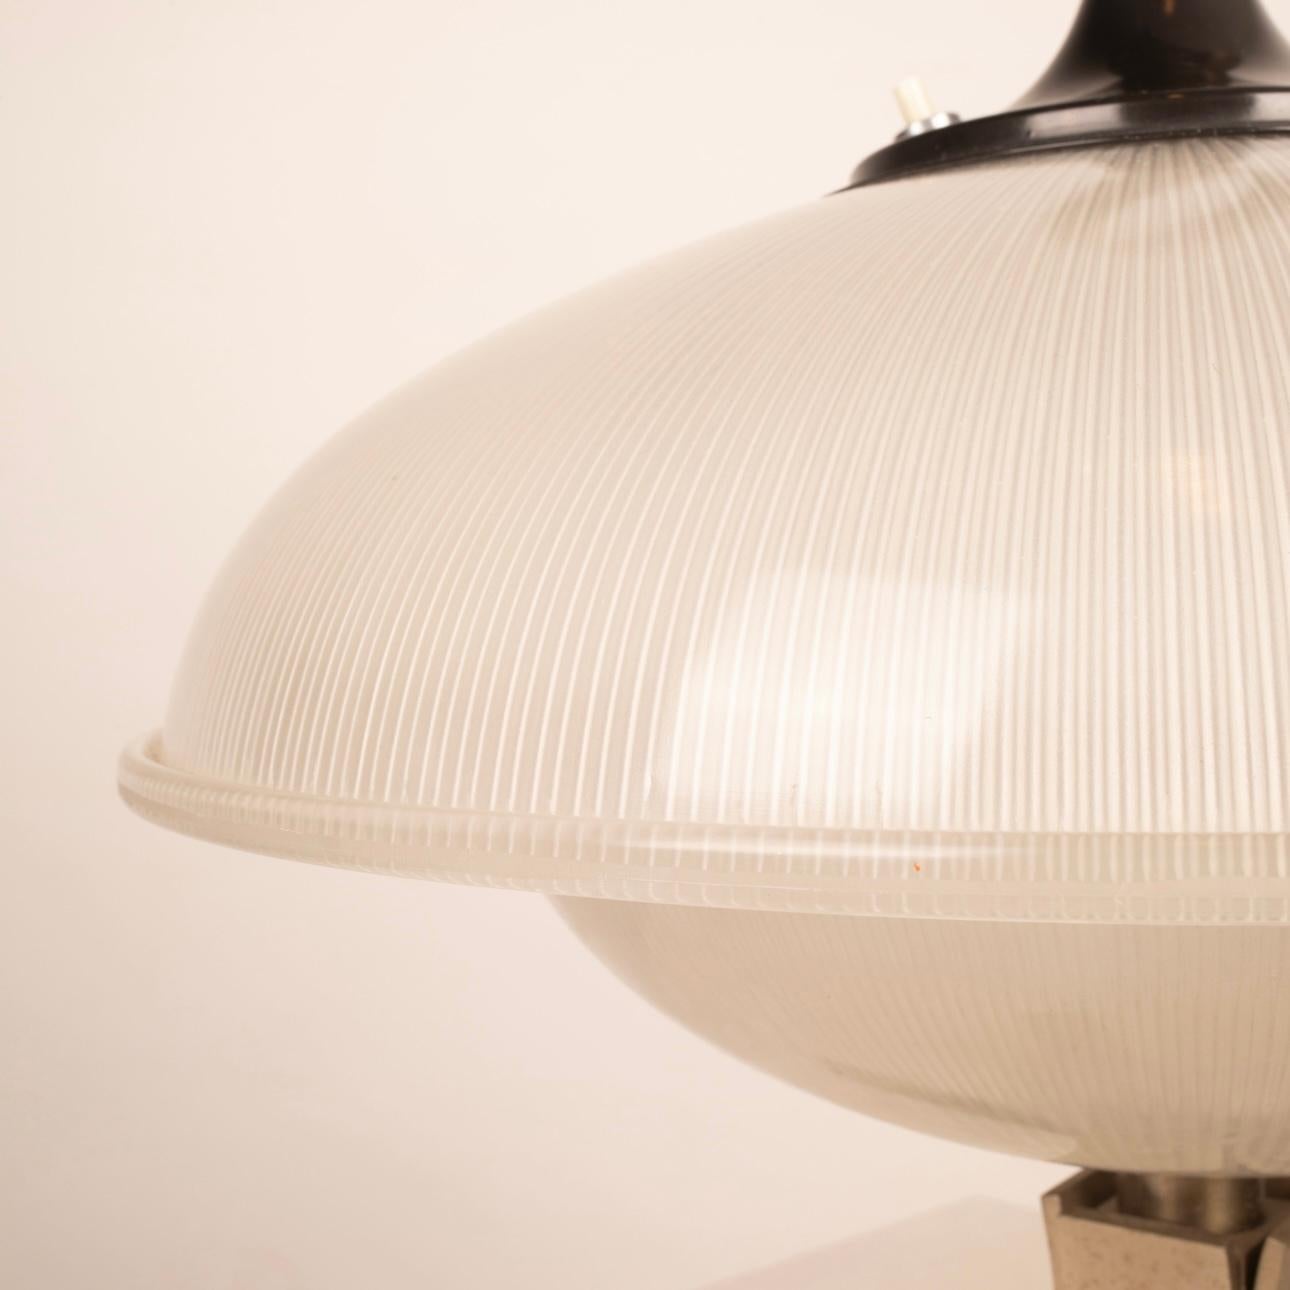 Découvrez une perle rare dans le monde du design : l'extraordinaire lampe mod. 522, créée par Gino Sarfatti et produite par Arteluce Milano en 1948. Cette lampe unique est un exemple de design intemporel qui continue à briller par son style